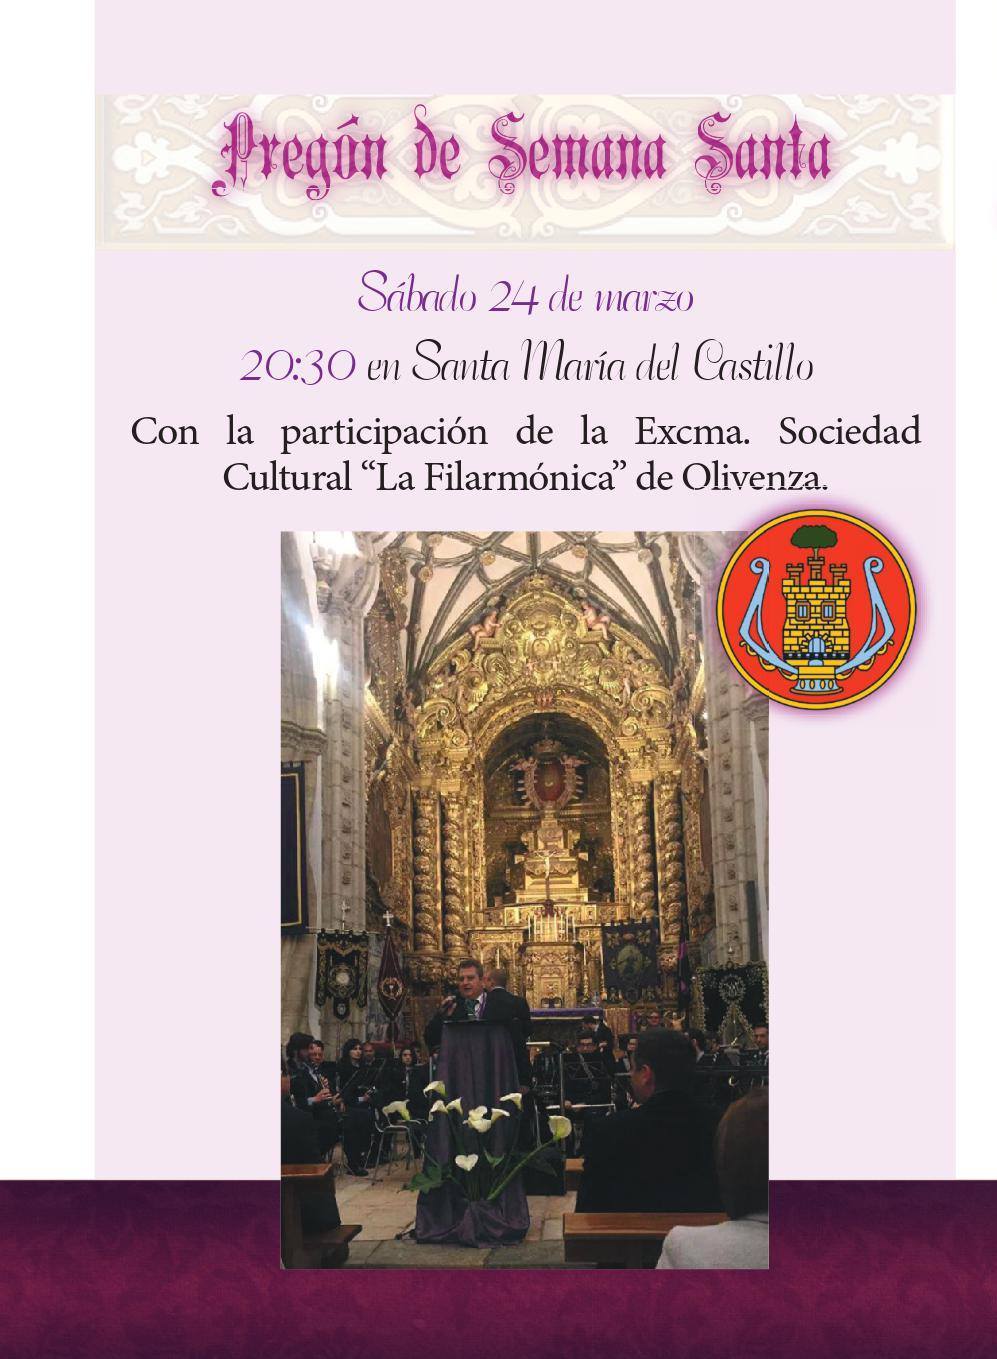 La música de La Filarmónica engalana el pregón de Semana Santa de Olivenza 2018